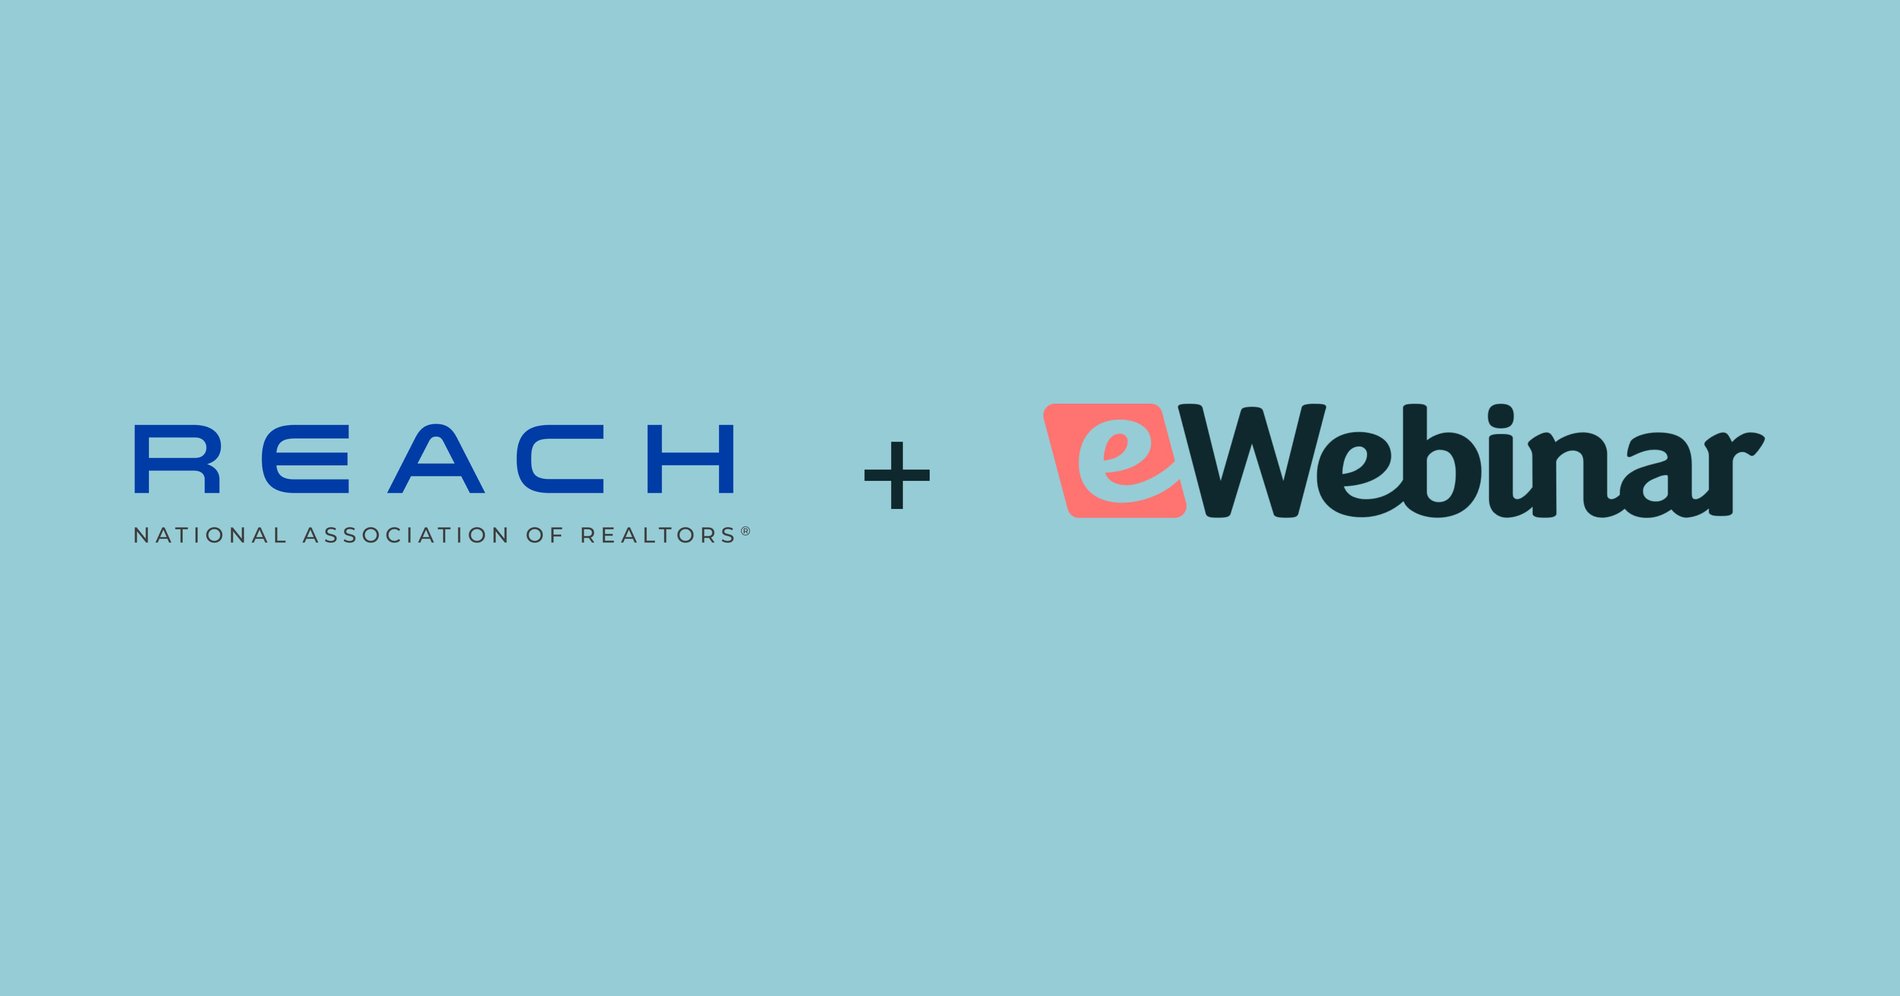 eWebinar s'associe au programme REACH pour aider les startups de l'immobilier à développer l'accueil et la formation des agents.